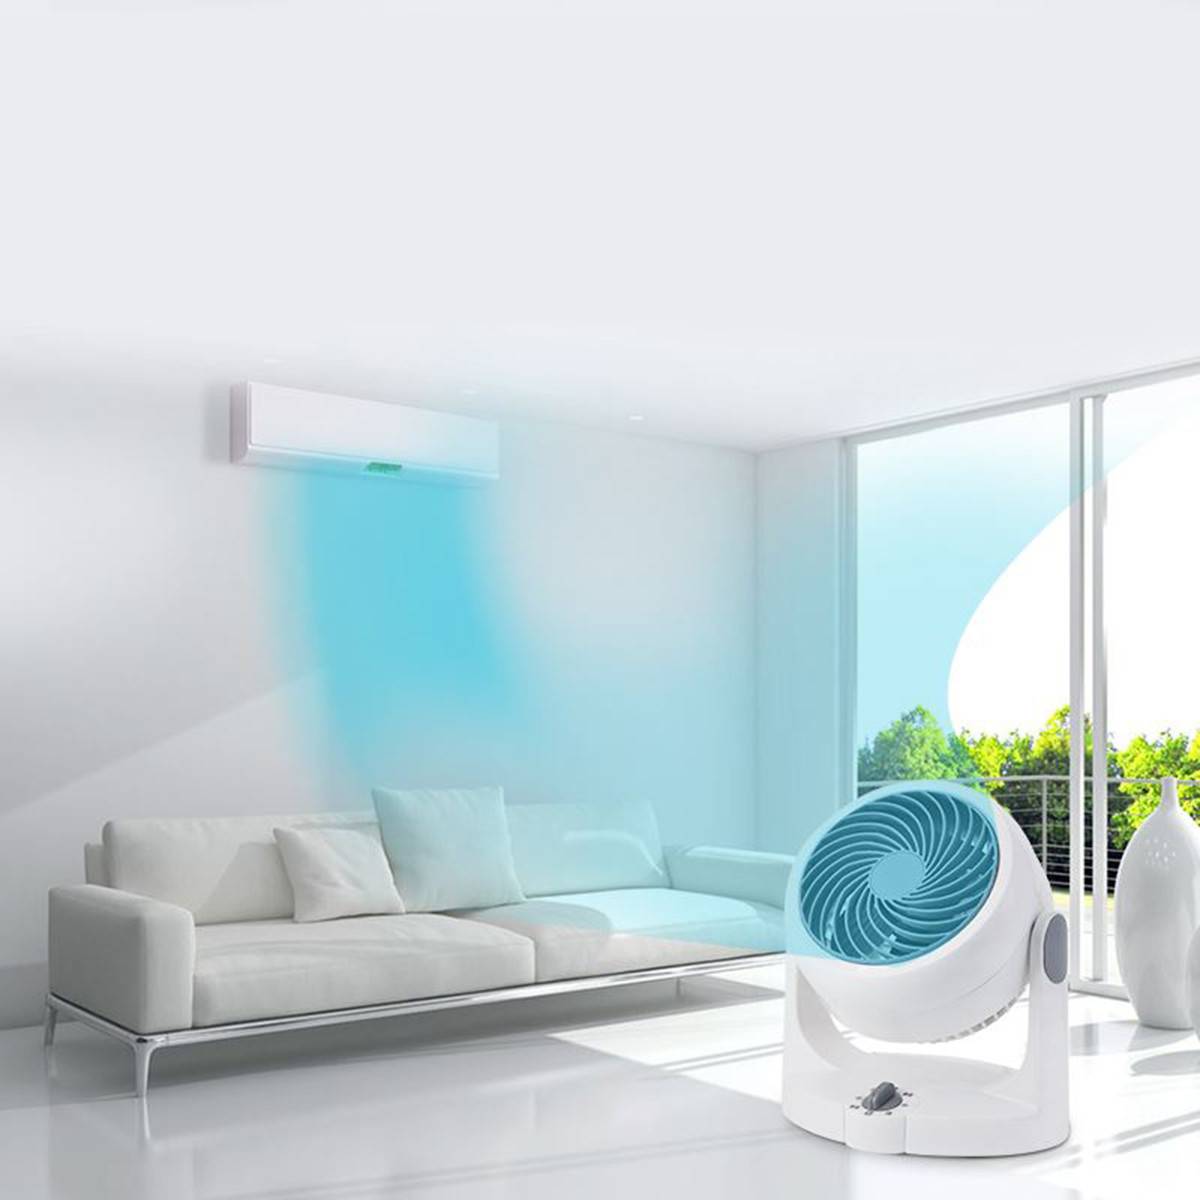 Лучший вытяжной вентилятор в ванную комнату: рейтинг 2022 года, какой лучше